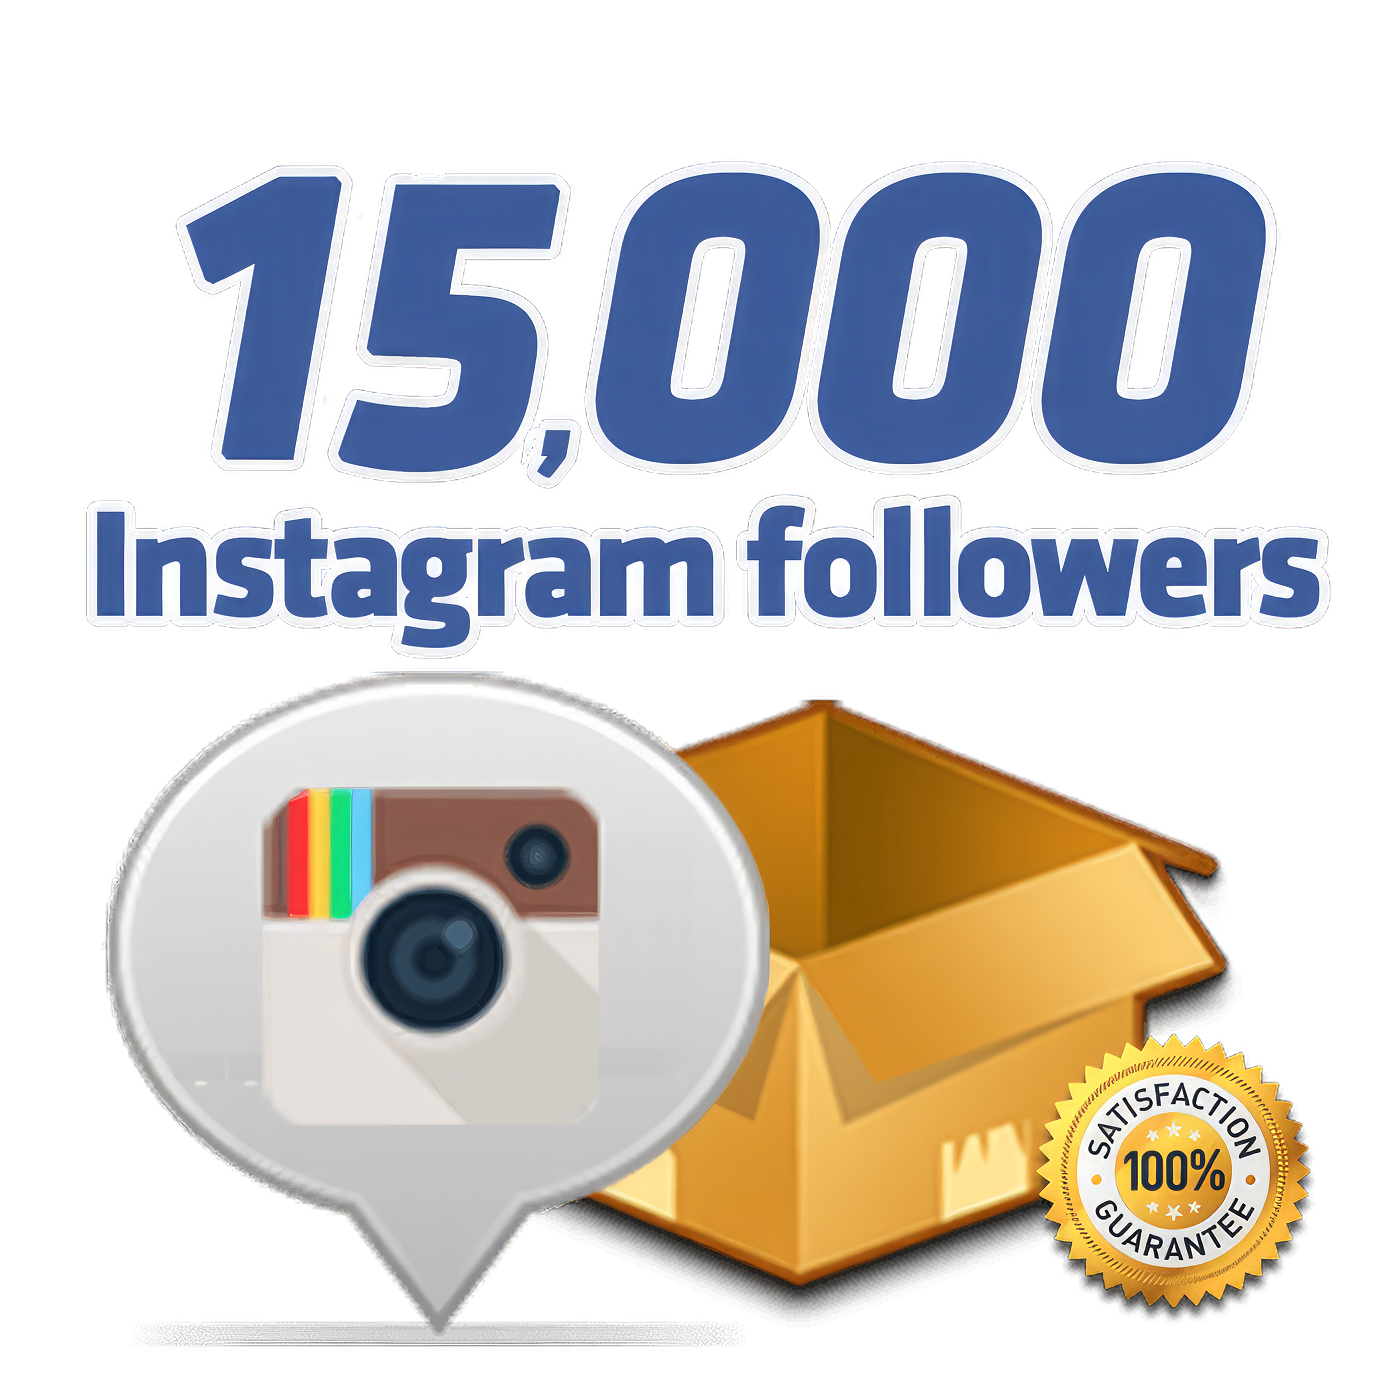 15000 instagram followers